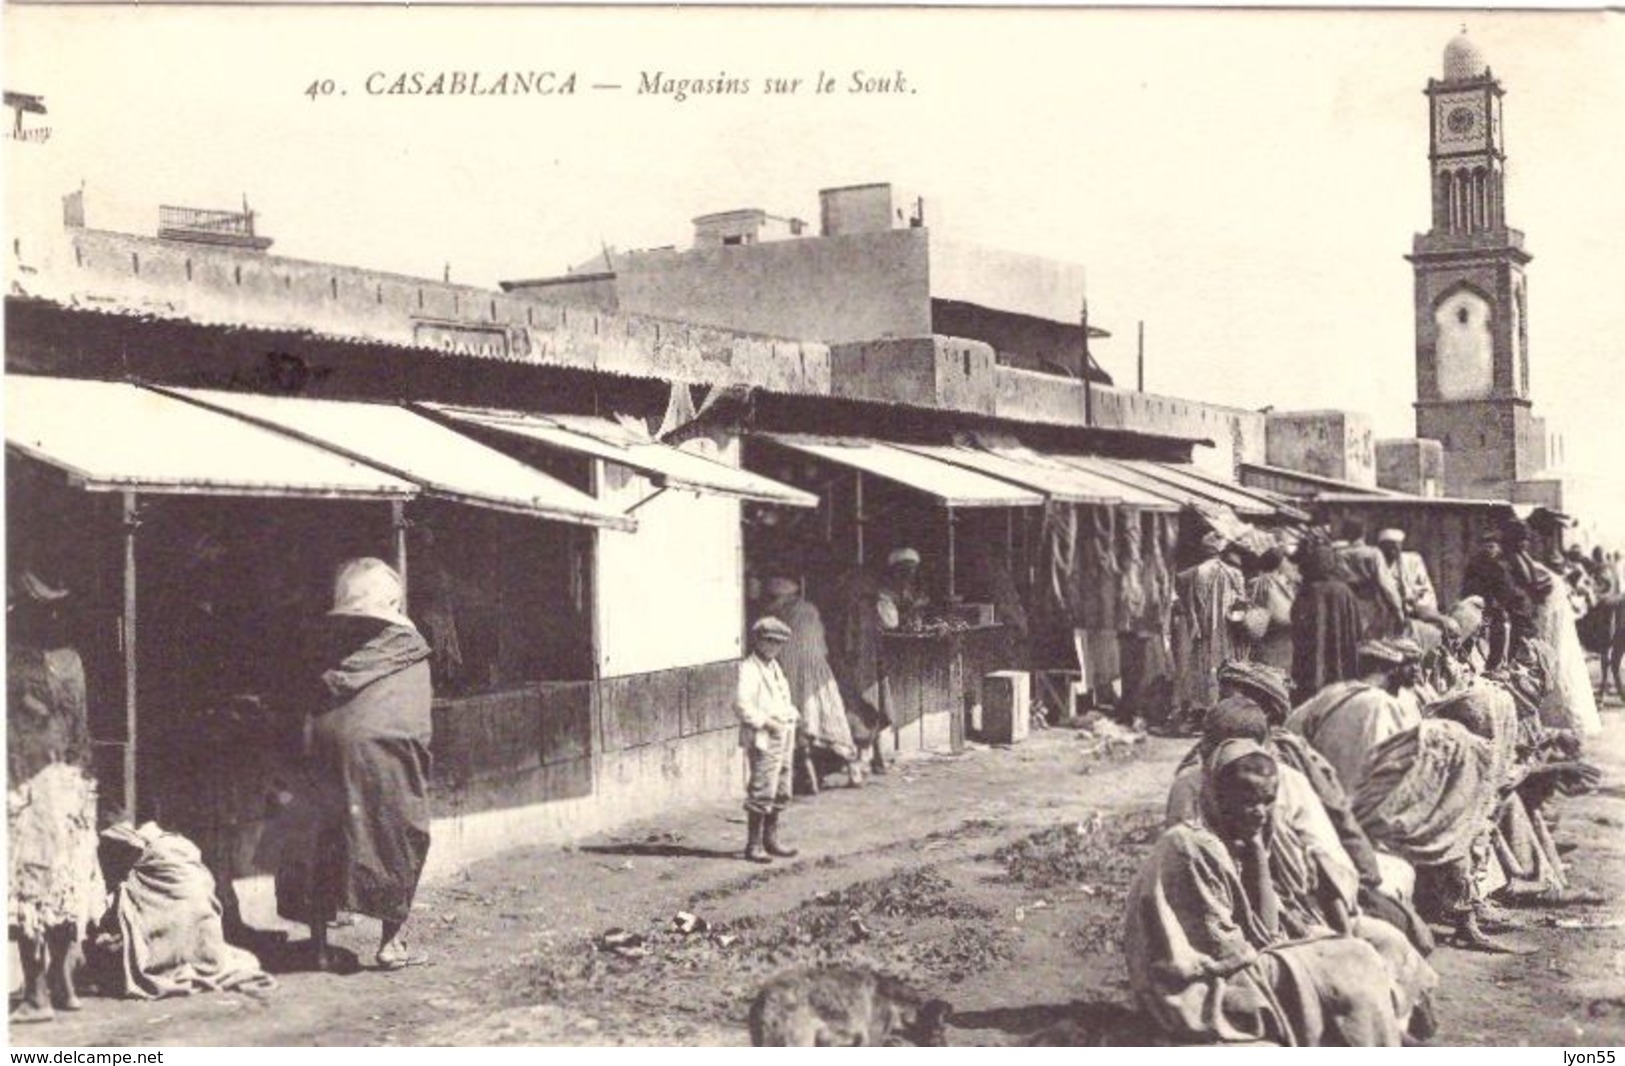 Casablanca Magasins Sur Le Souk - Casablanca